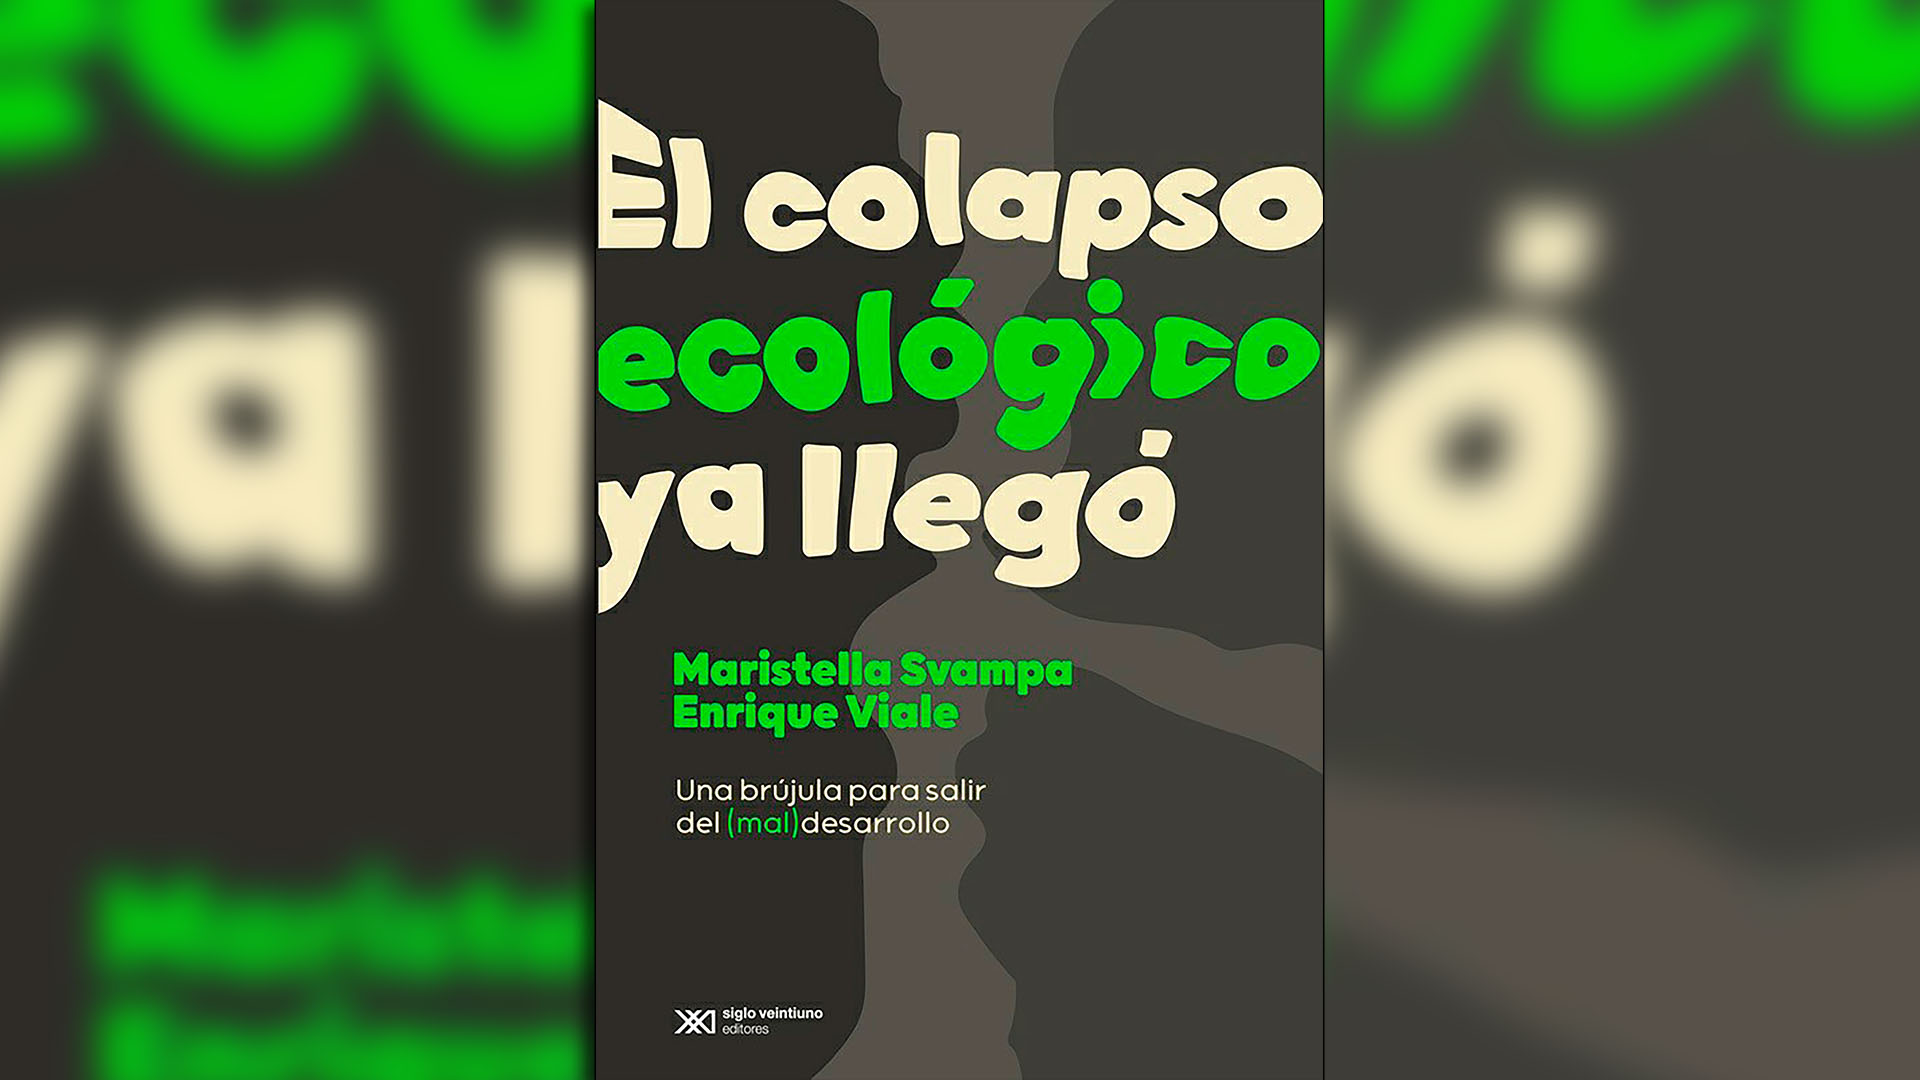 Portada de "El colapso ecológico ya llegó", de Maristella Svampa y Enrique Viale